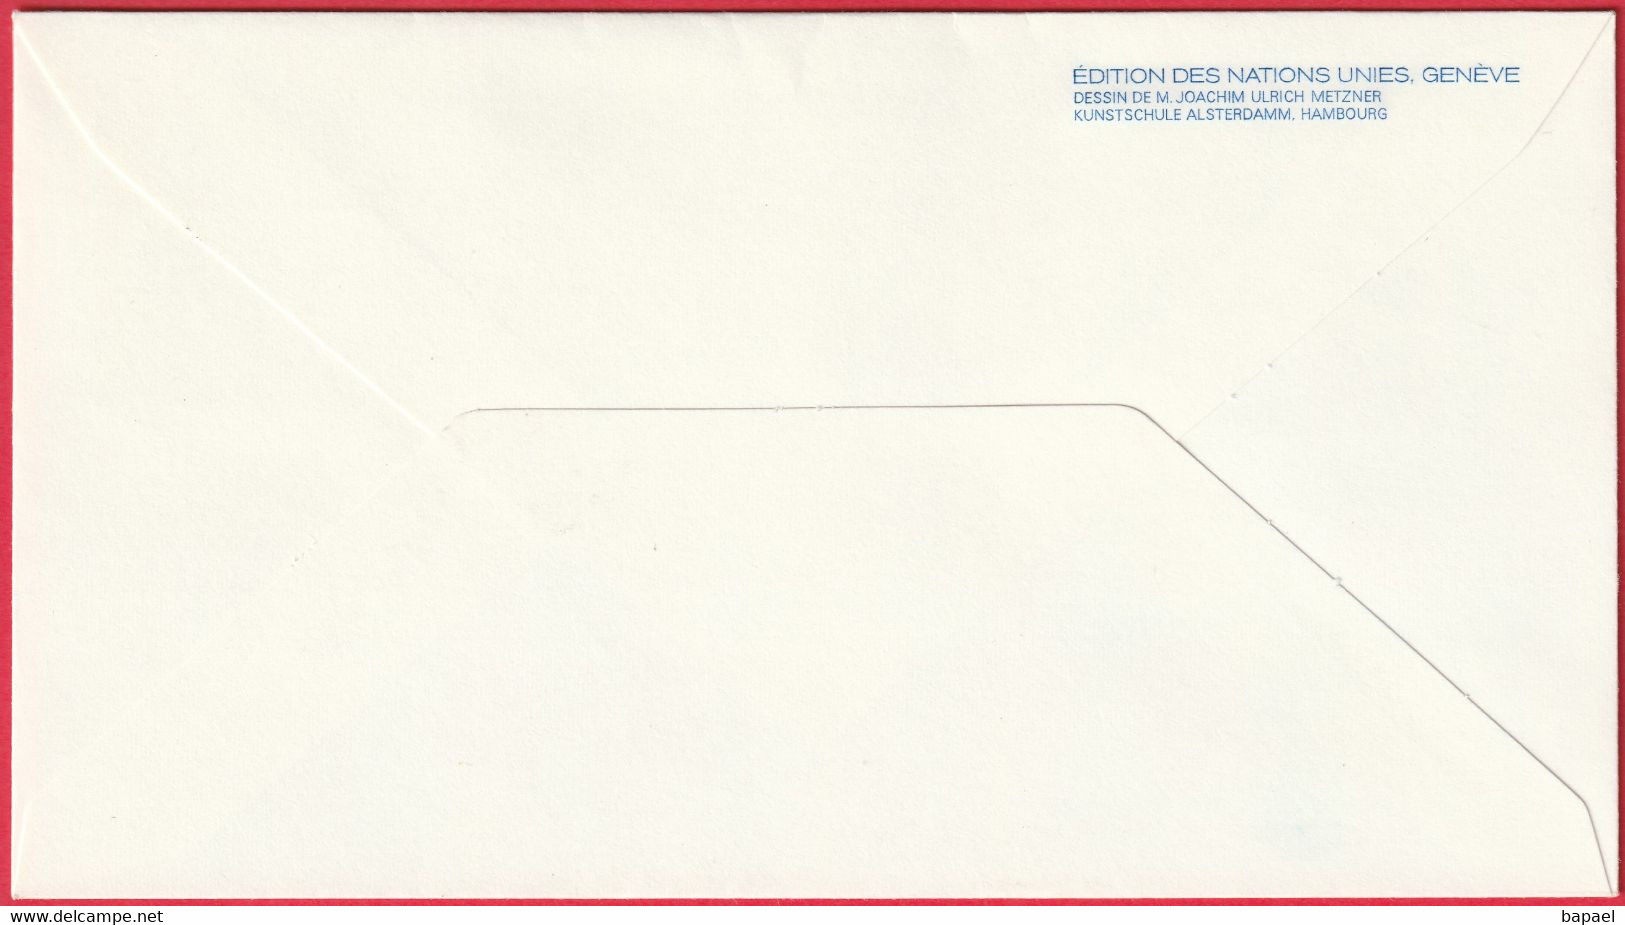 FDC - Enveloppe - Nations Unies - (New-York) (9-1-76) - Definitive Séries 1976 (Recto-Verso) - Briefe U. Dokumente